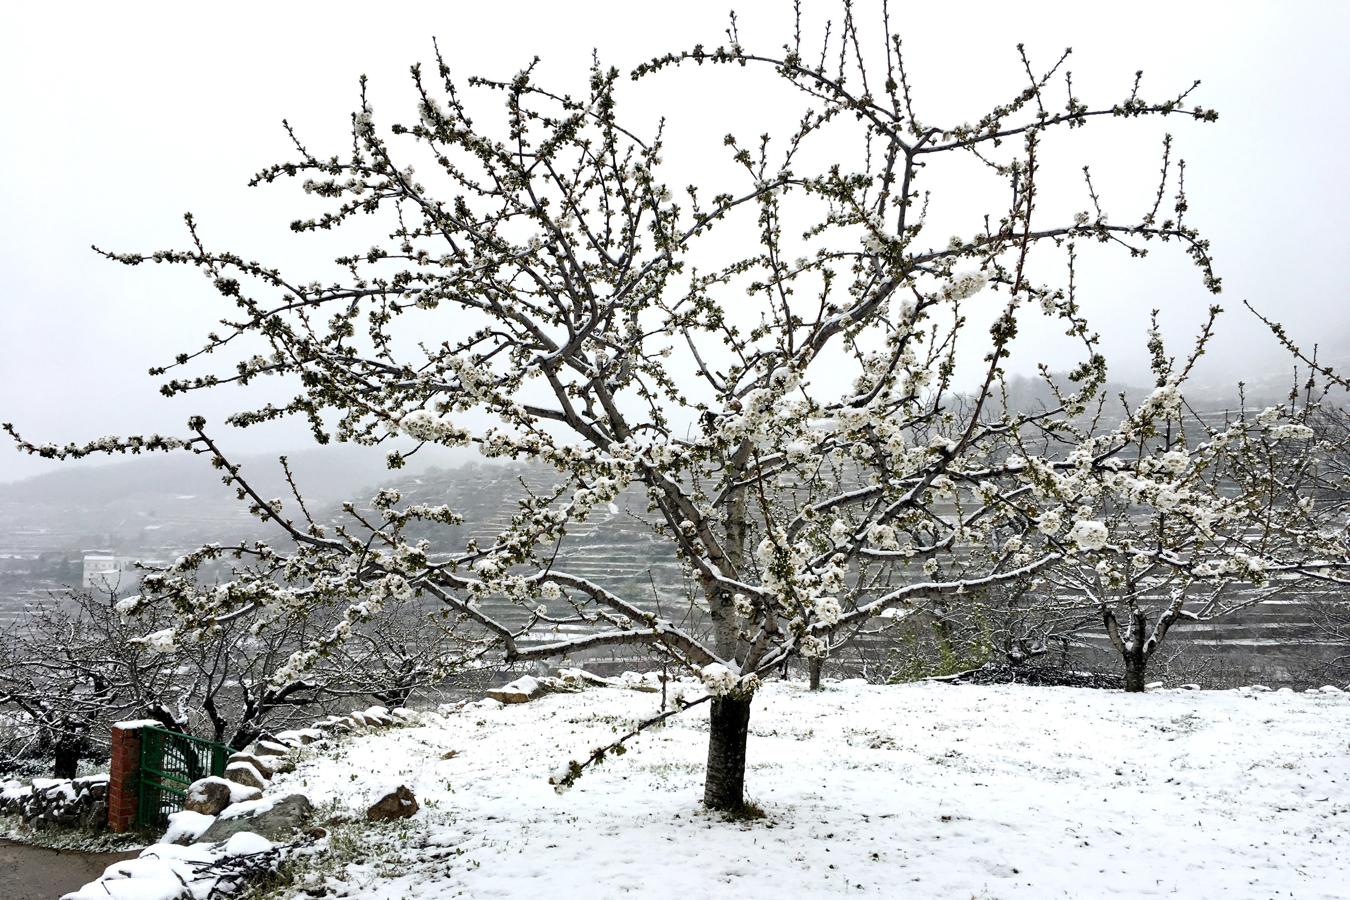 Cerezos en flor cubiertos por la nieve en Tornavacas (Cáceres